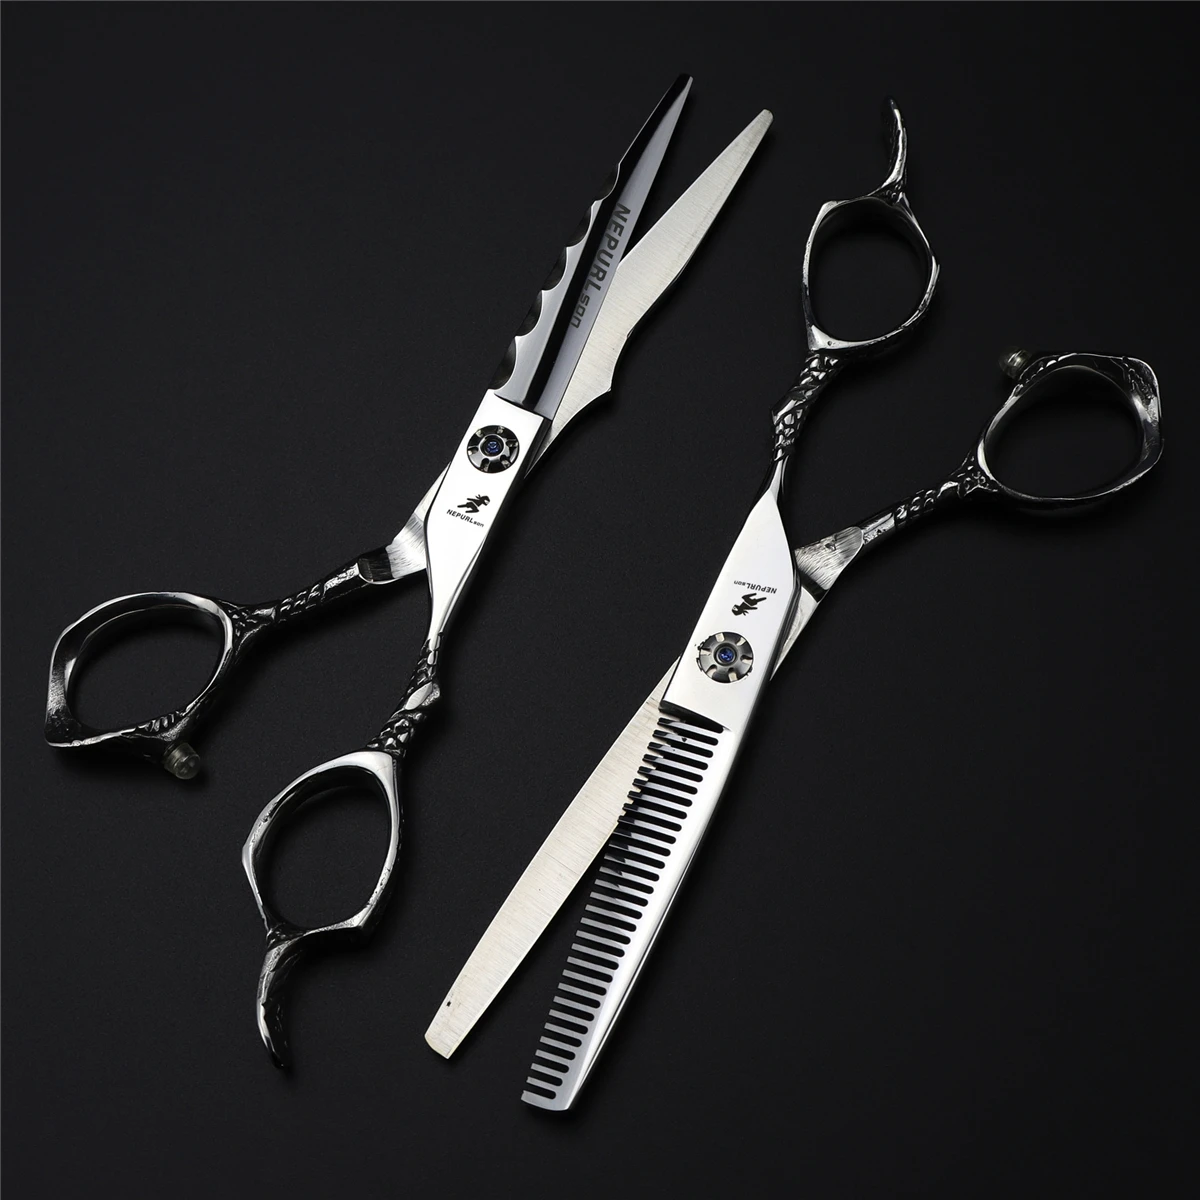 

Профессиональные Парикмахерские ножницы 6 дюймов, японские 440с Парикмахерские ножницы для стрижки волос, салонные филировочные ножницы, се...